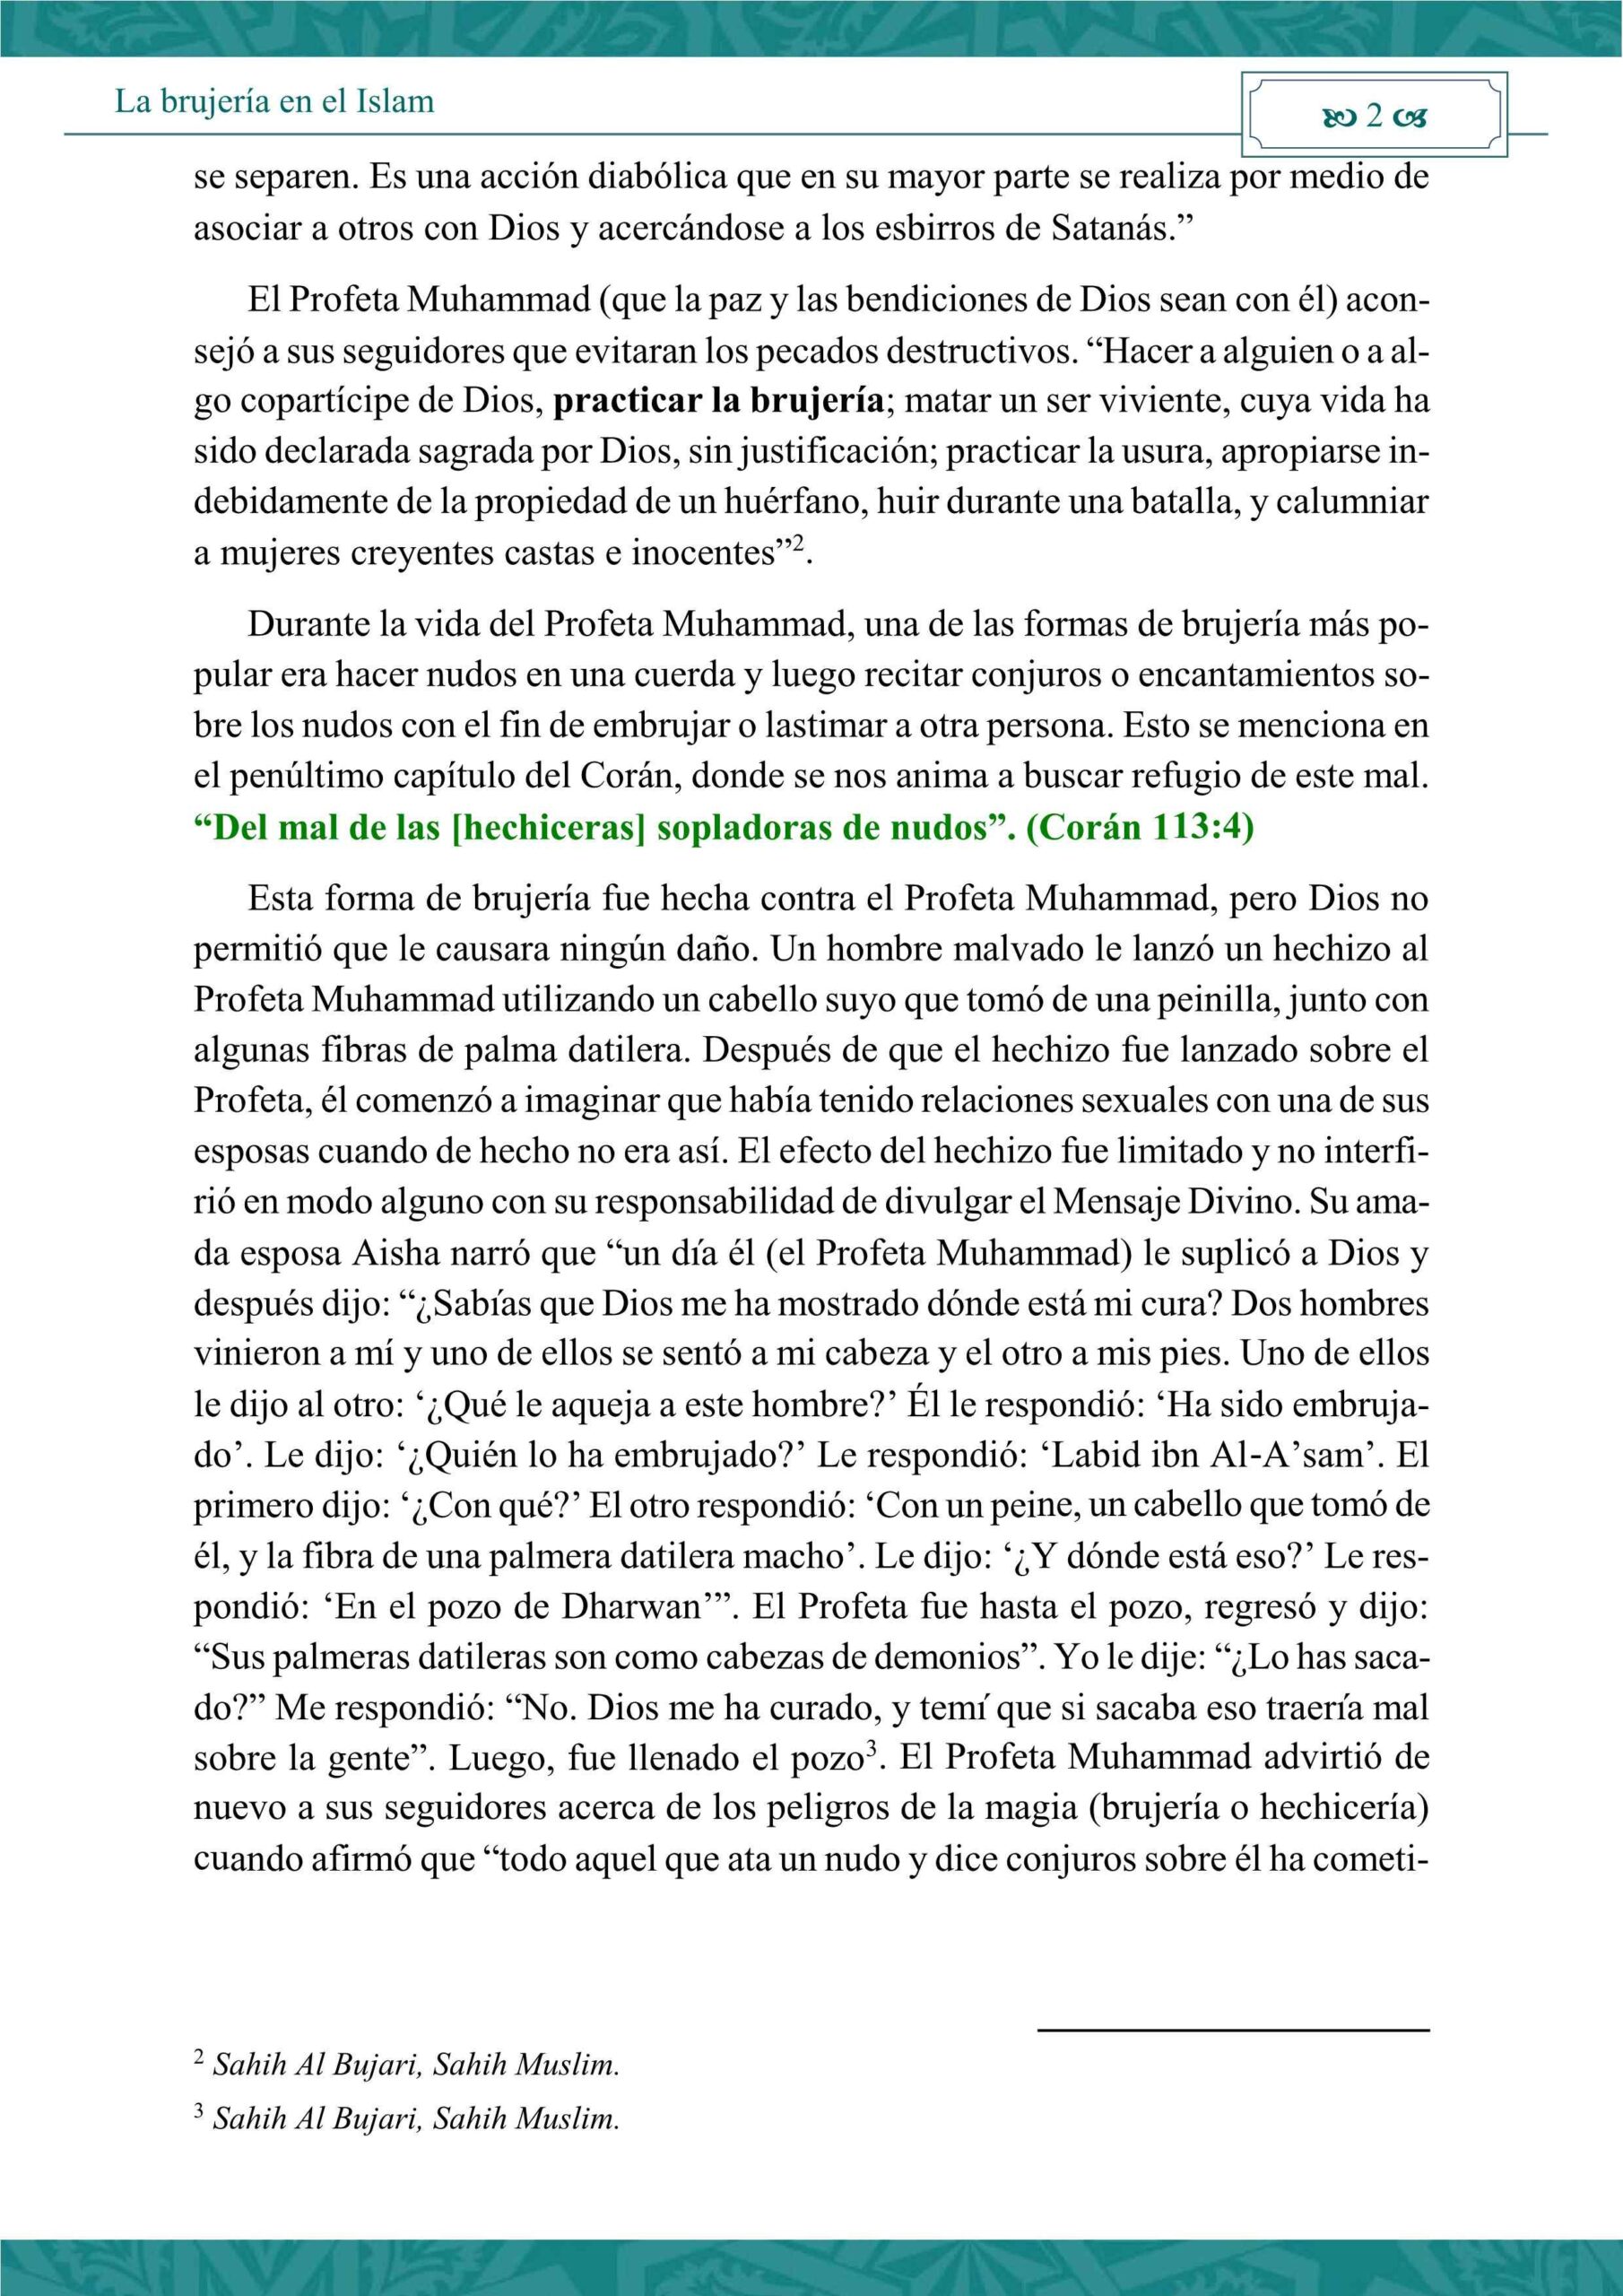 إسباني - حكم السحر في الإسلام - La brujería en el Islam.pdf, 8-Sayfa 